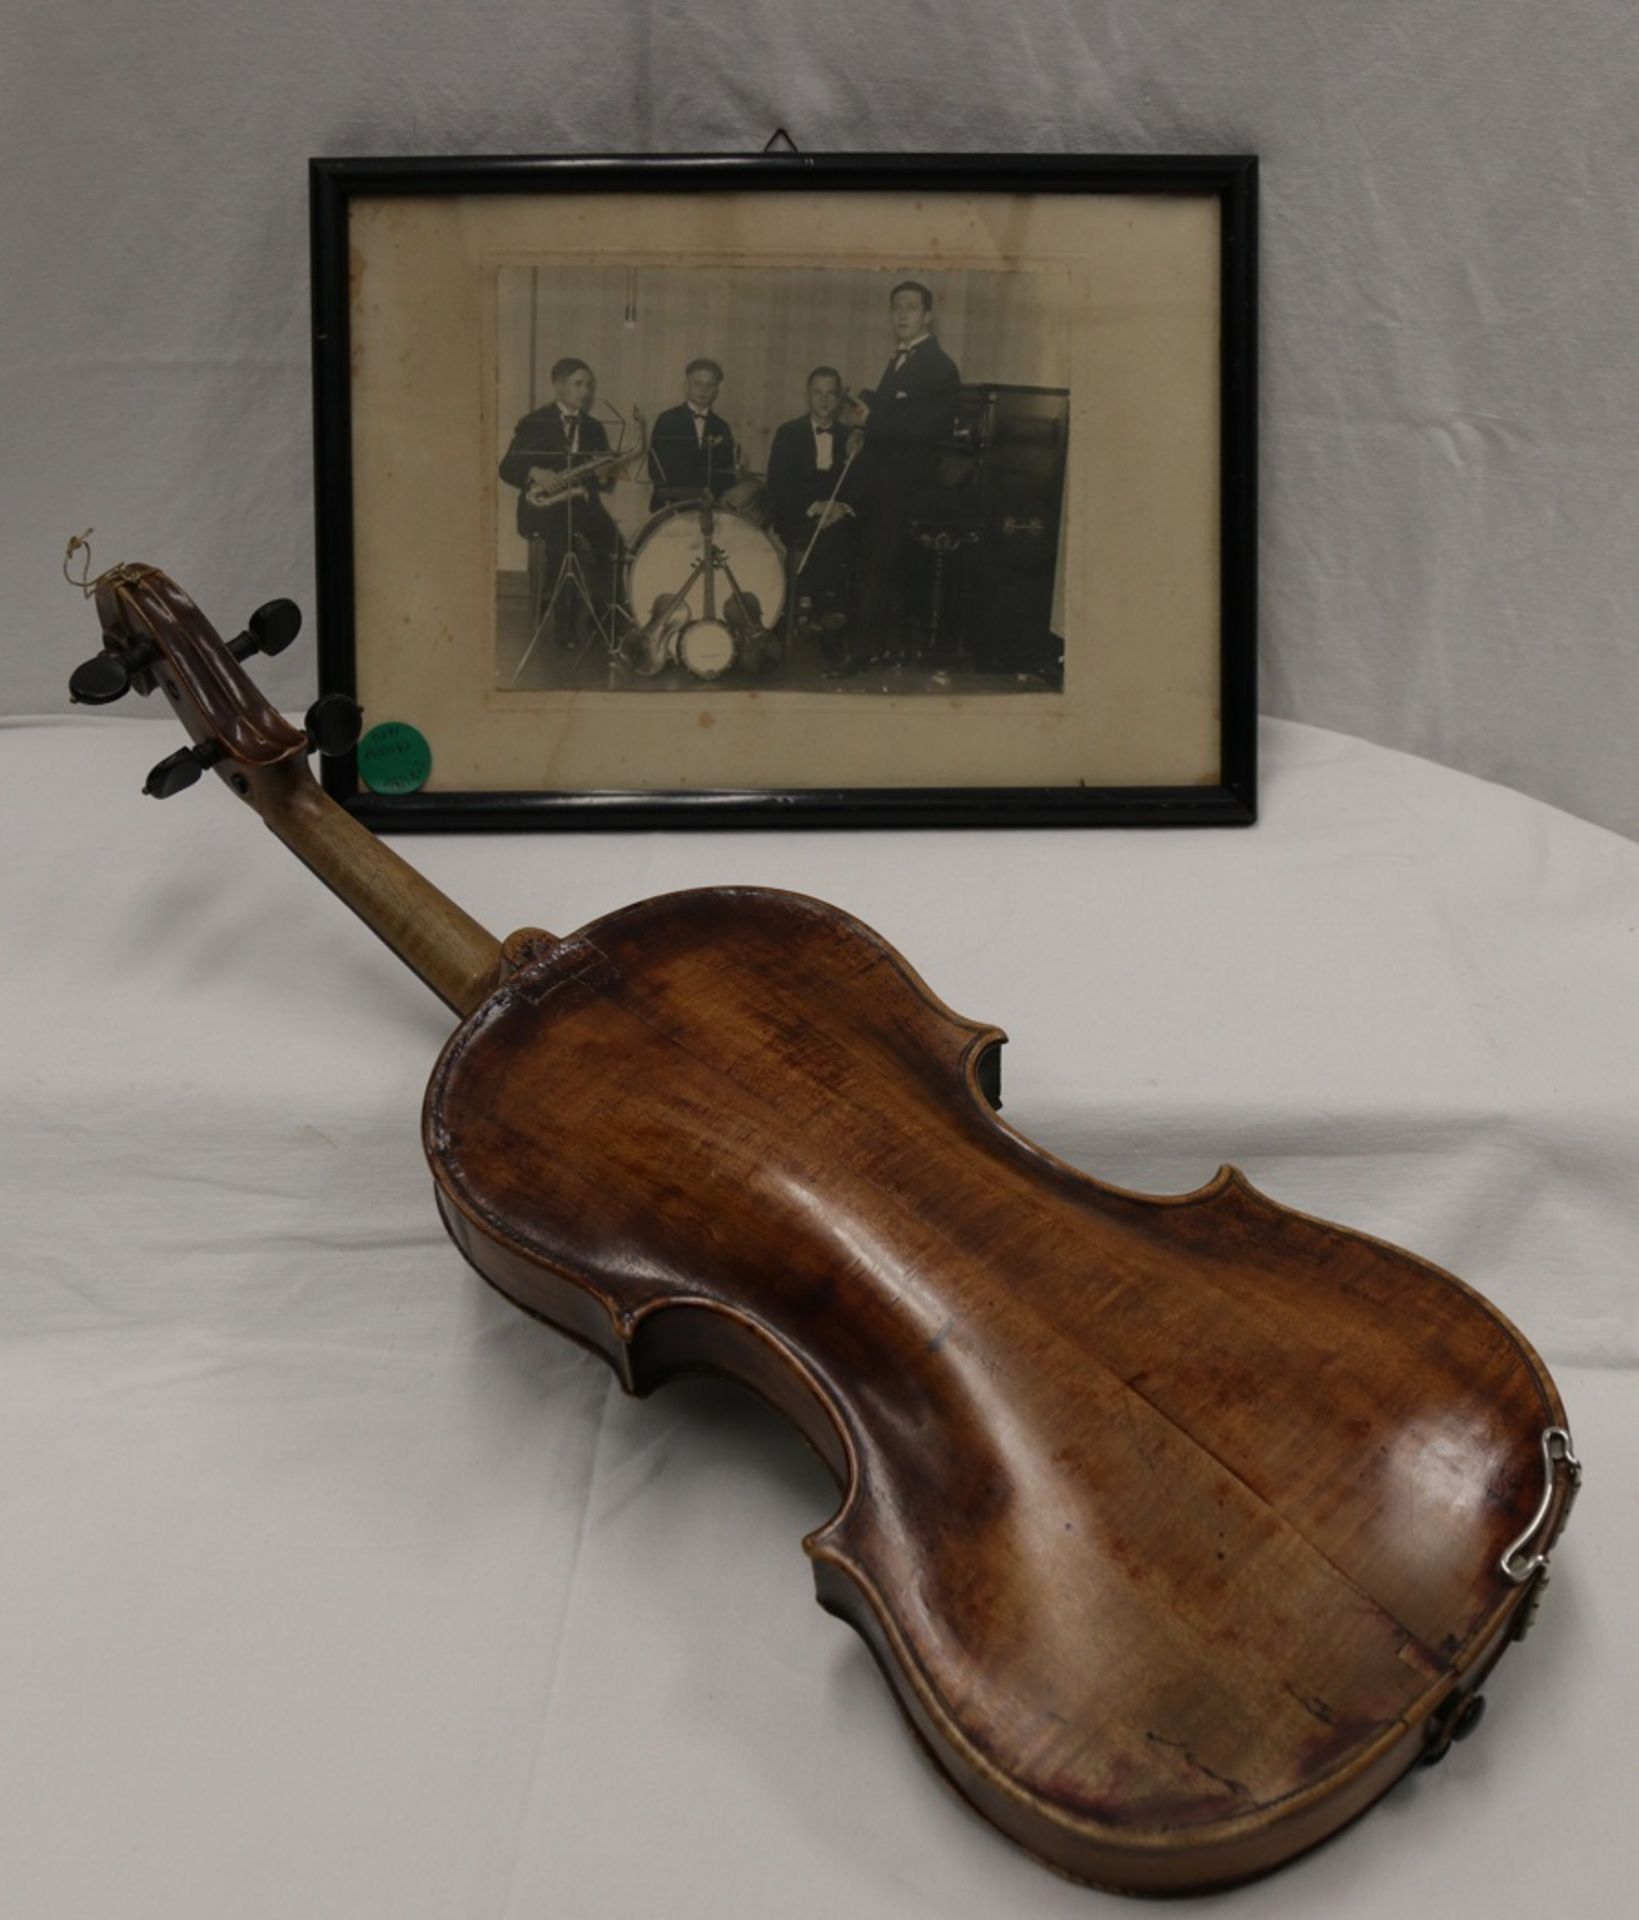 Solide alte Geige incl. Koffer und orig. Fotographie des Musikers 30er Jahre - Bild 6 aus 17